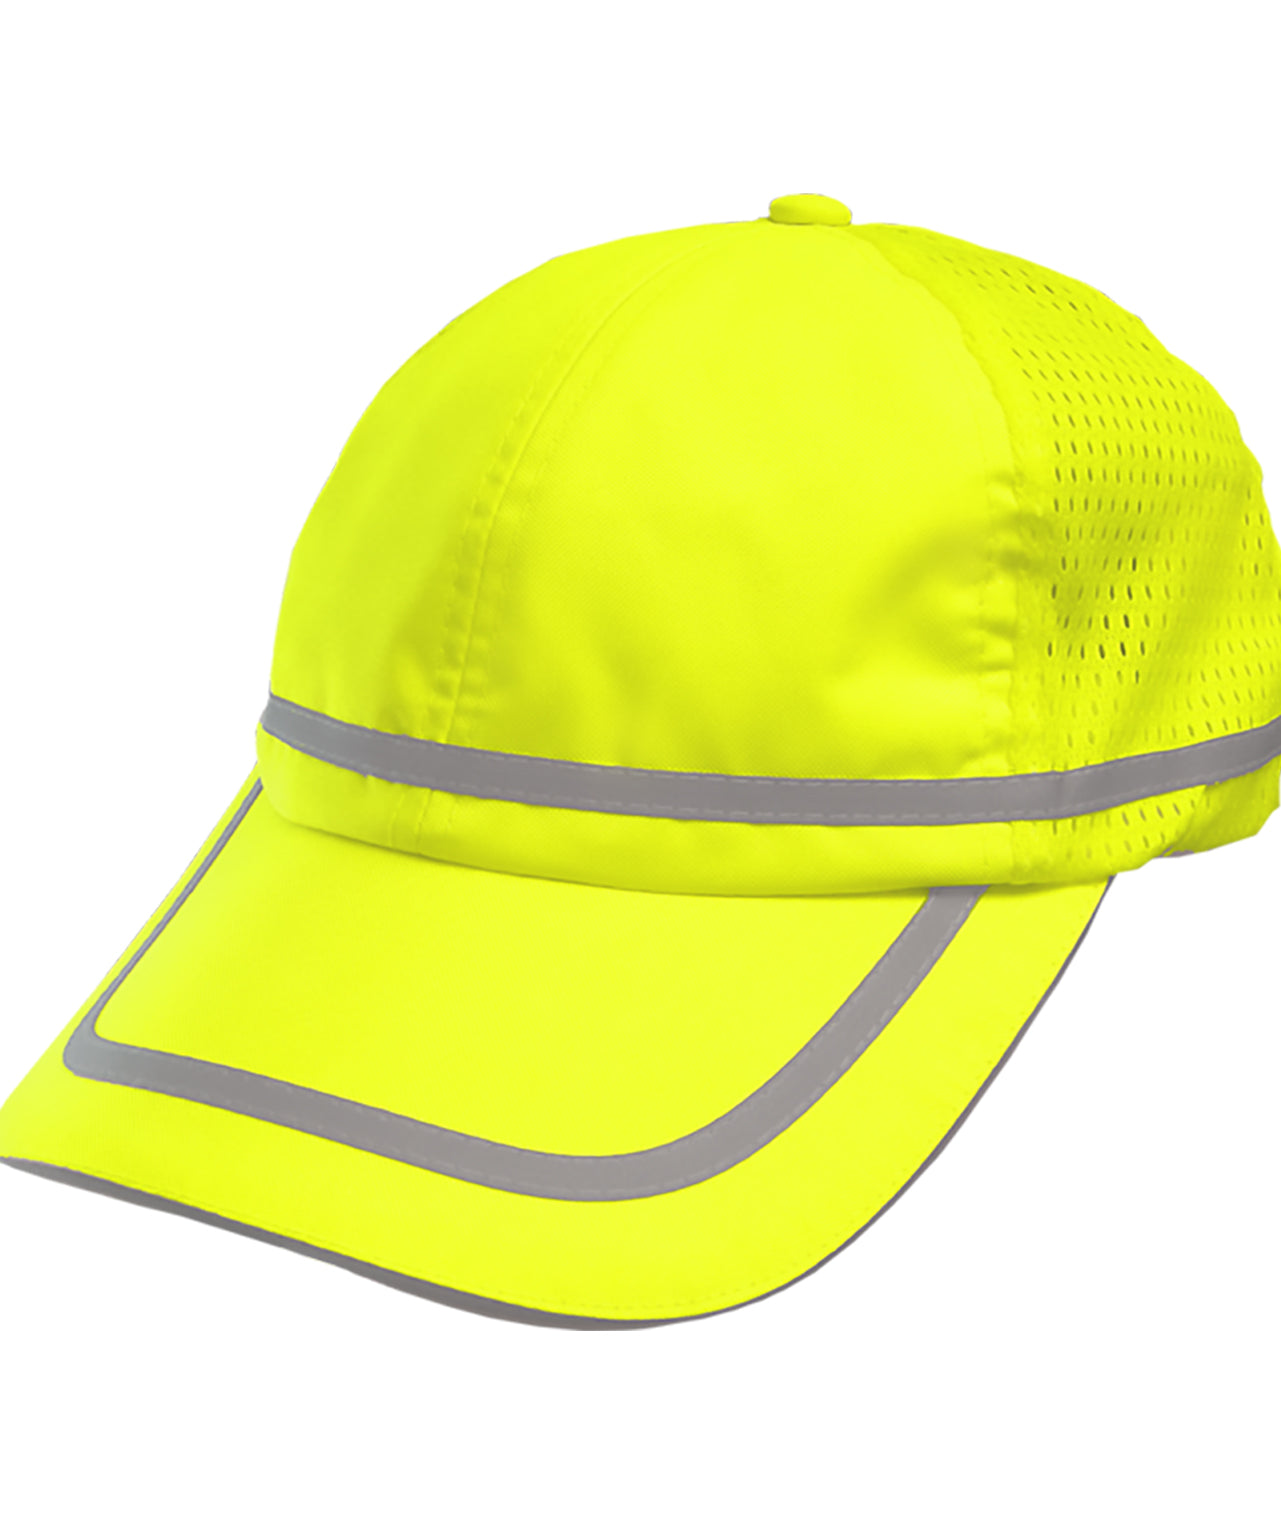 803STLM Safety Baseball Hat: Hi-Vis Cap: Adjustable Cotton Sweatband